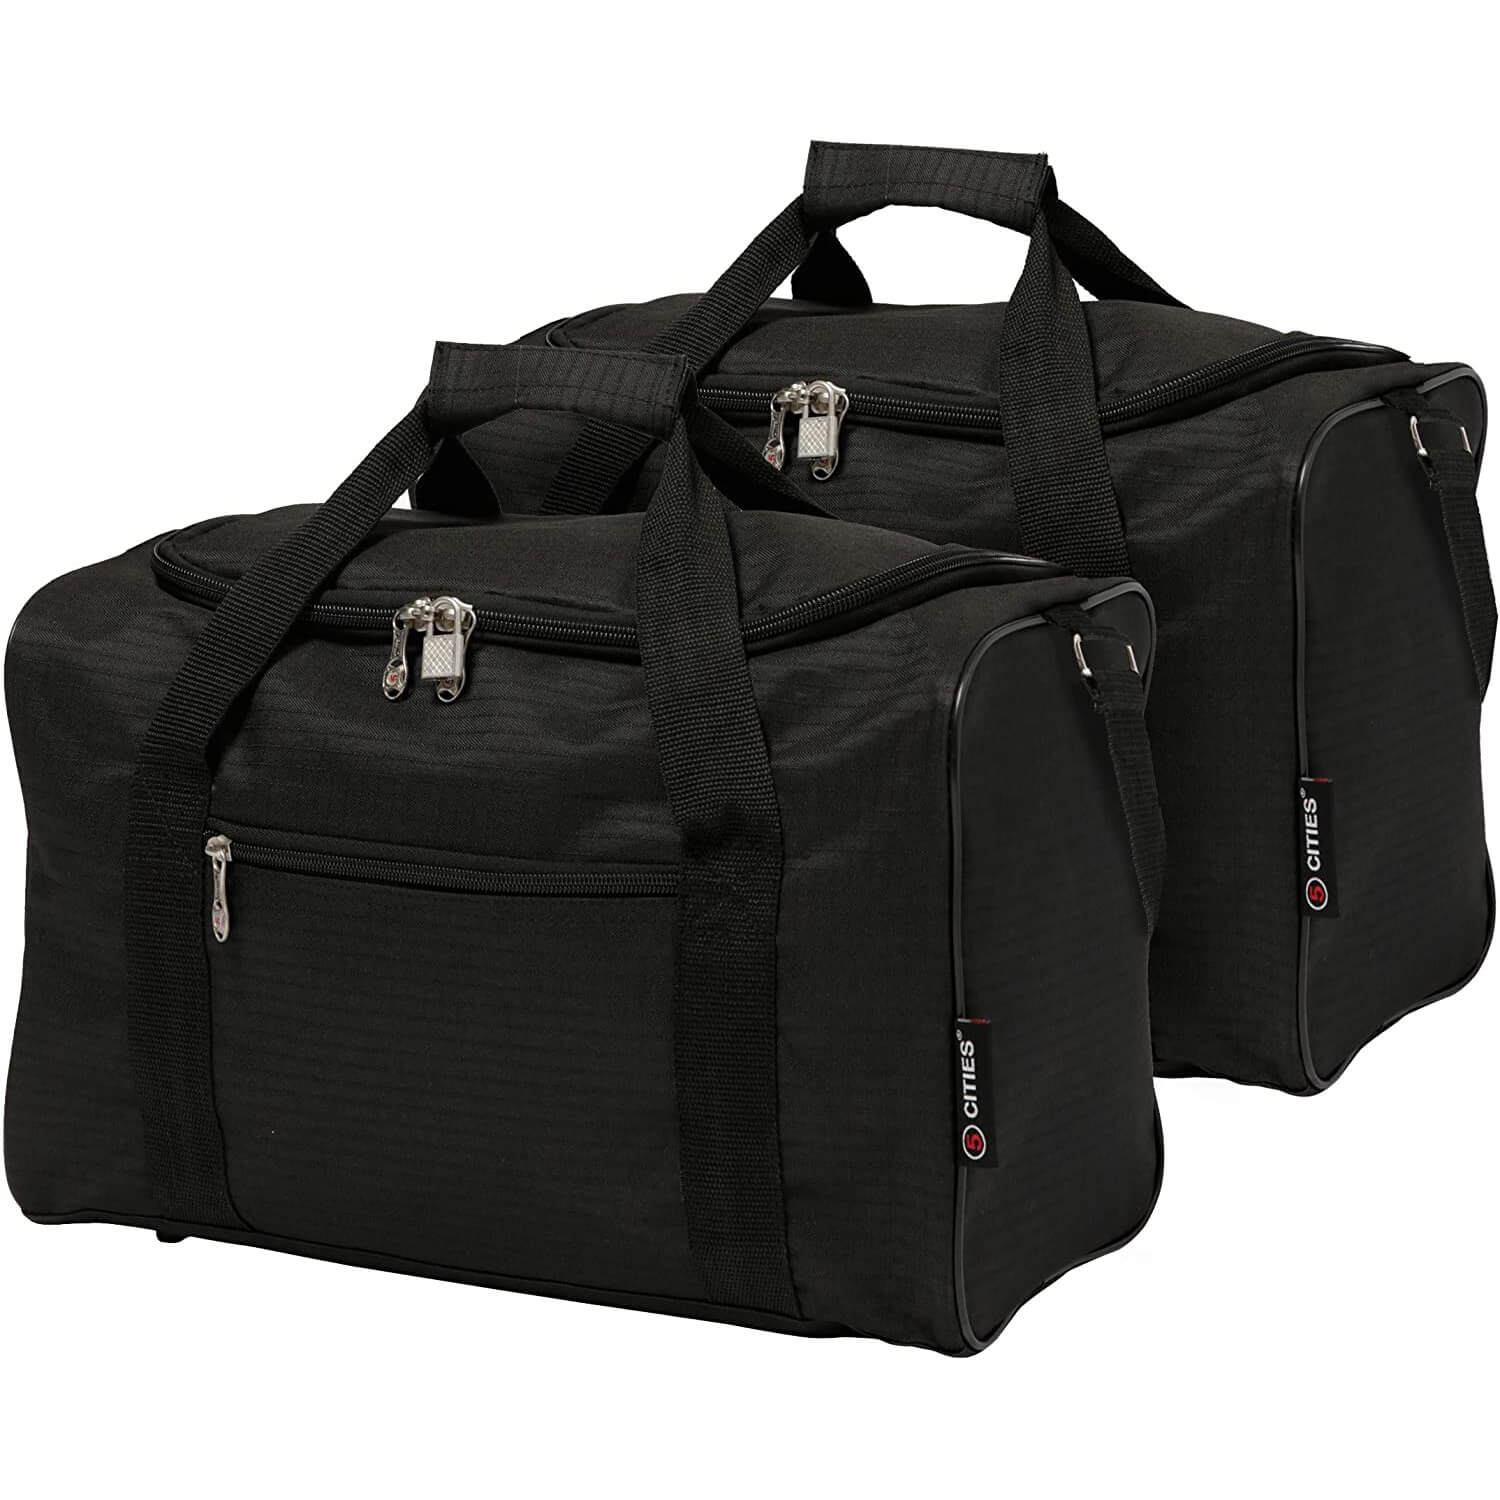 Sac à dos / trolley 40x30x20 (cm) bagages Wizz Air, RYANAIR